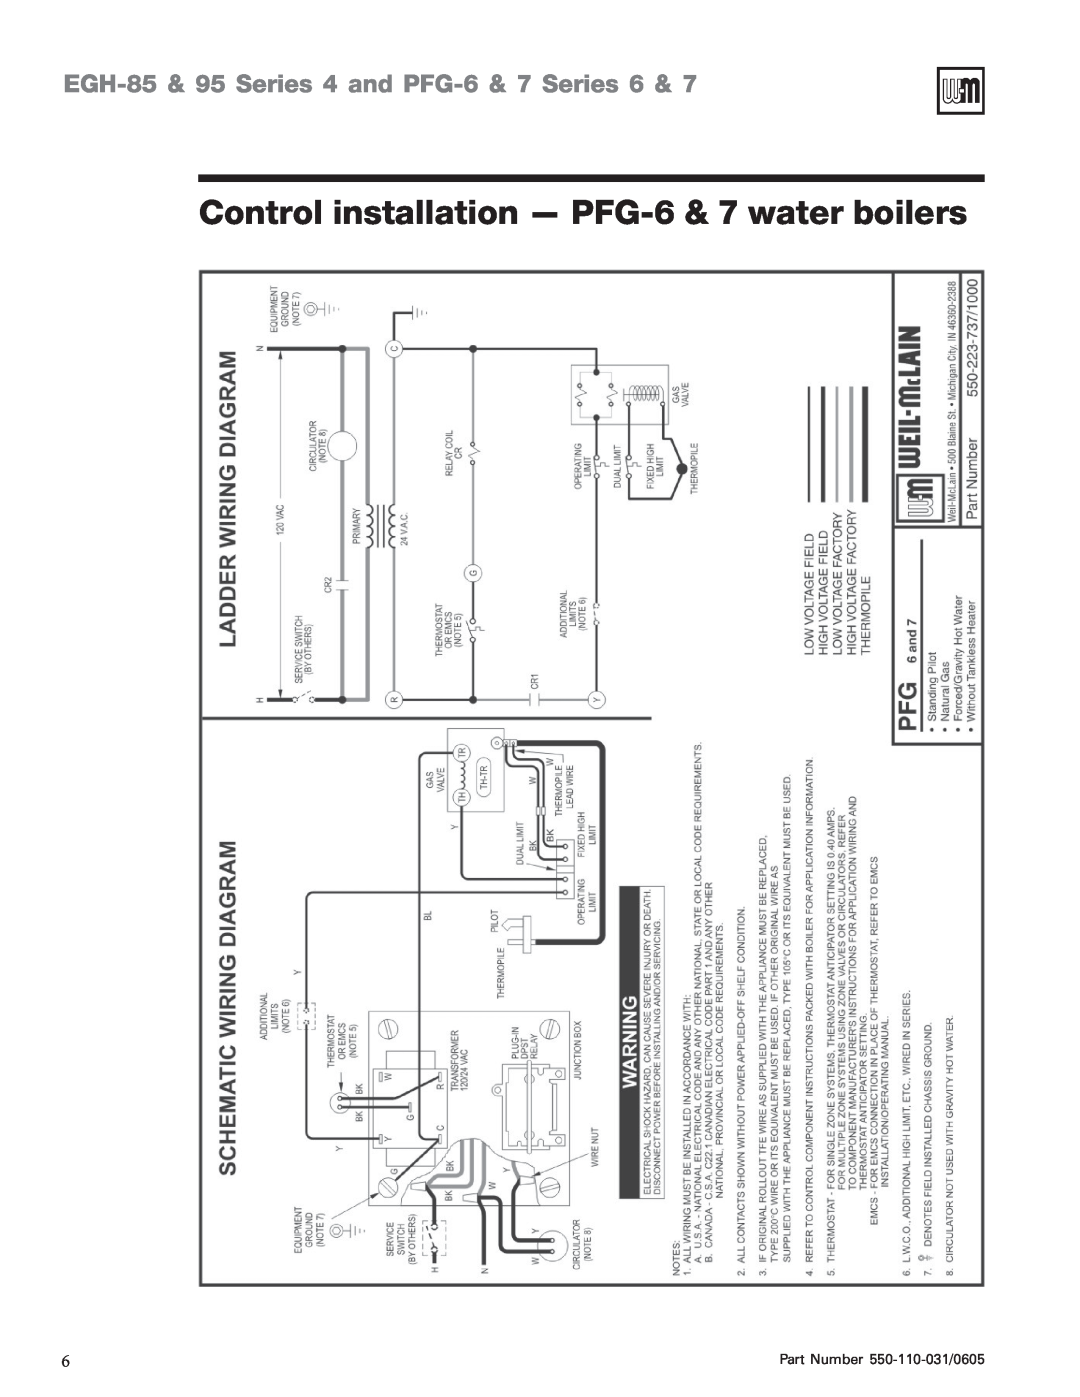 Weil-McLain EGH-95 manual Control installation - PFG-6& 7 water boilers, EGH-85& 95 Series 4 and PFG-6& 7 Series 